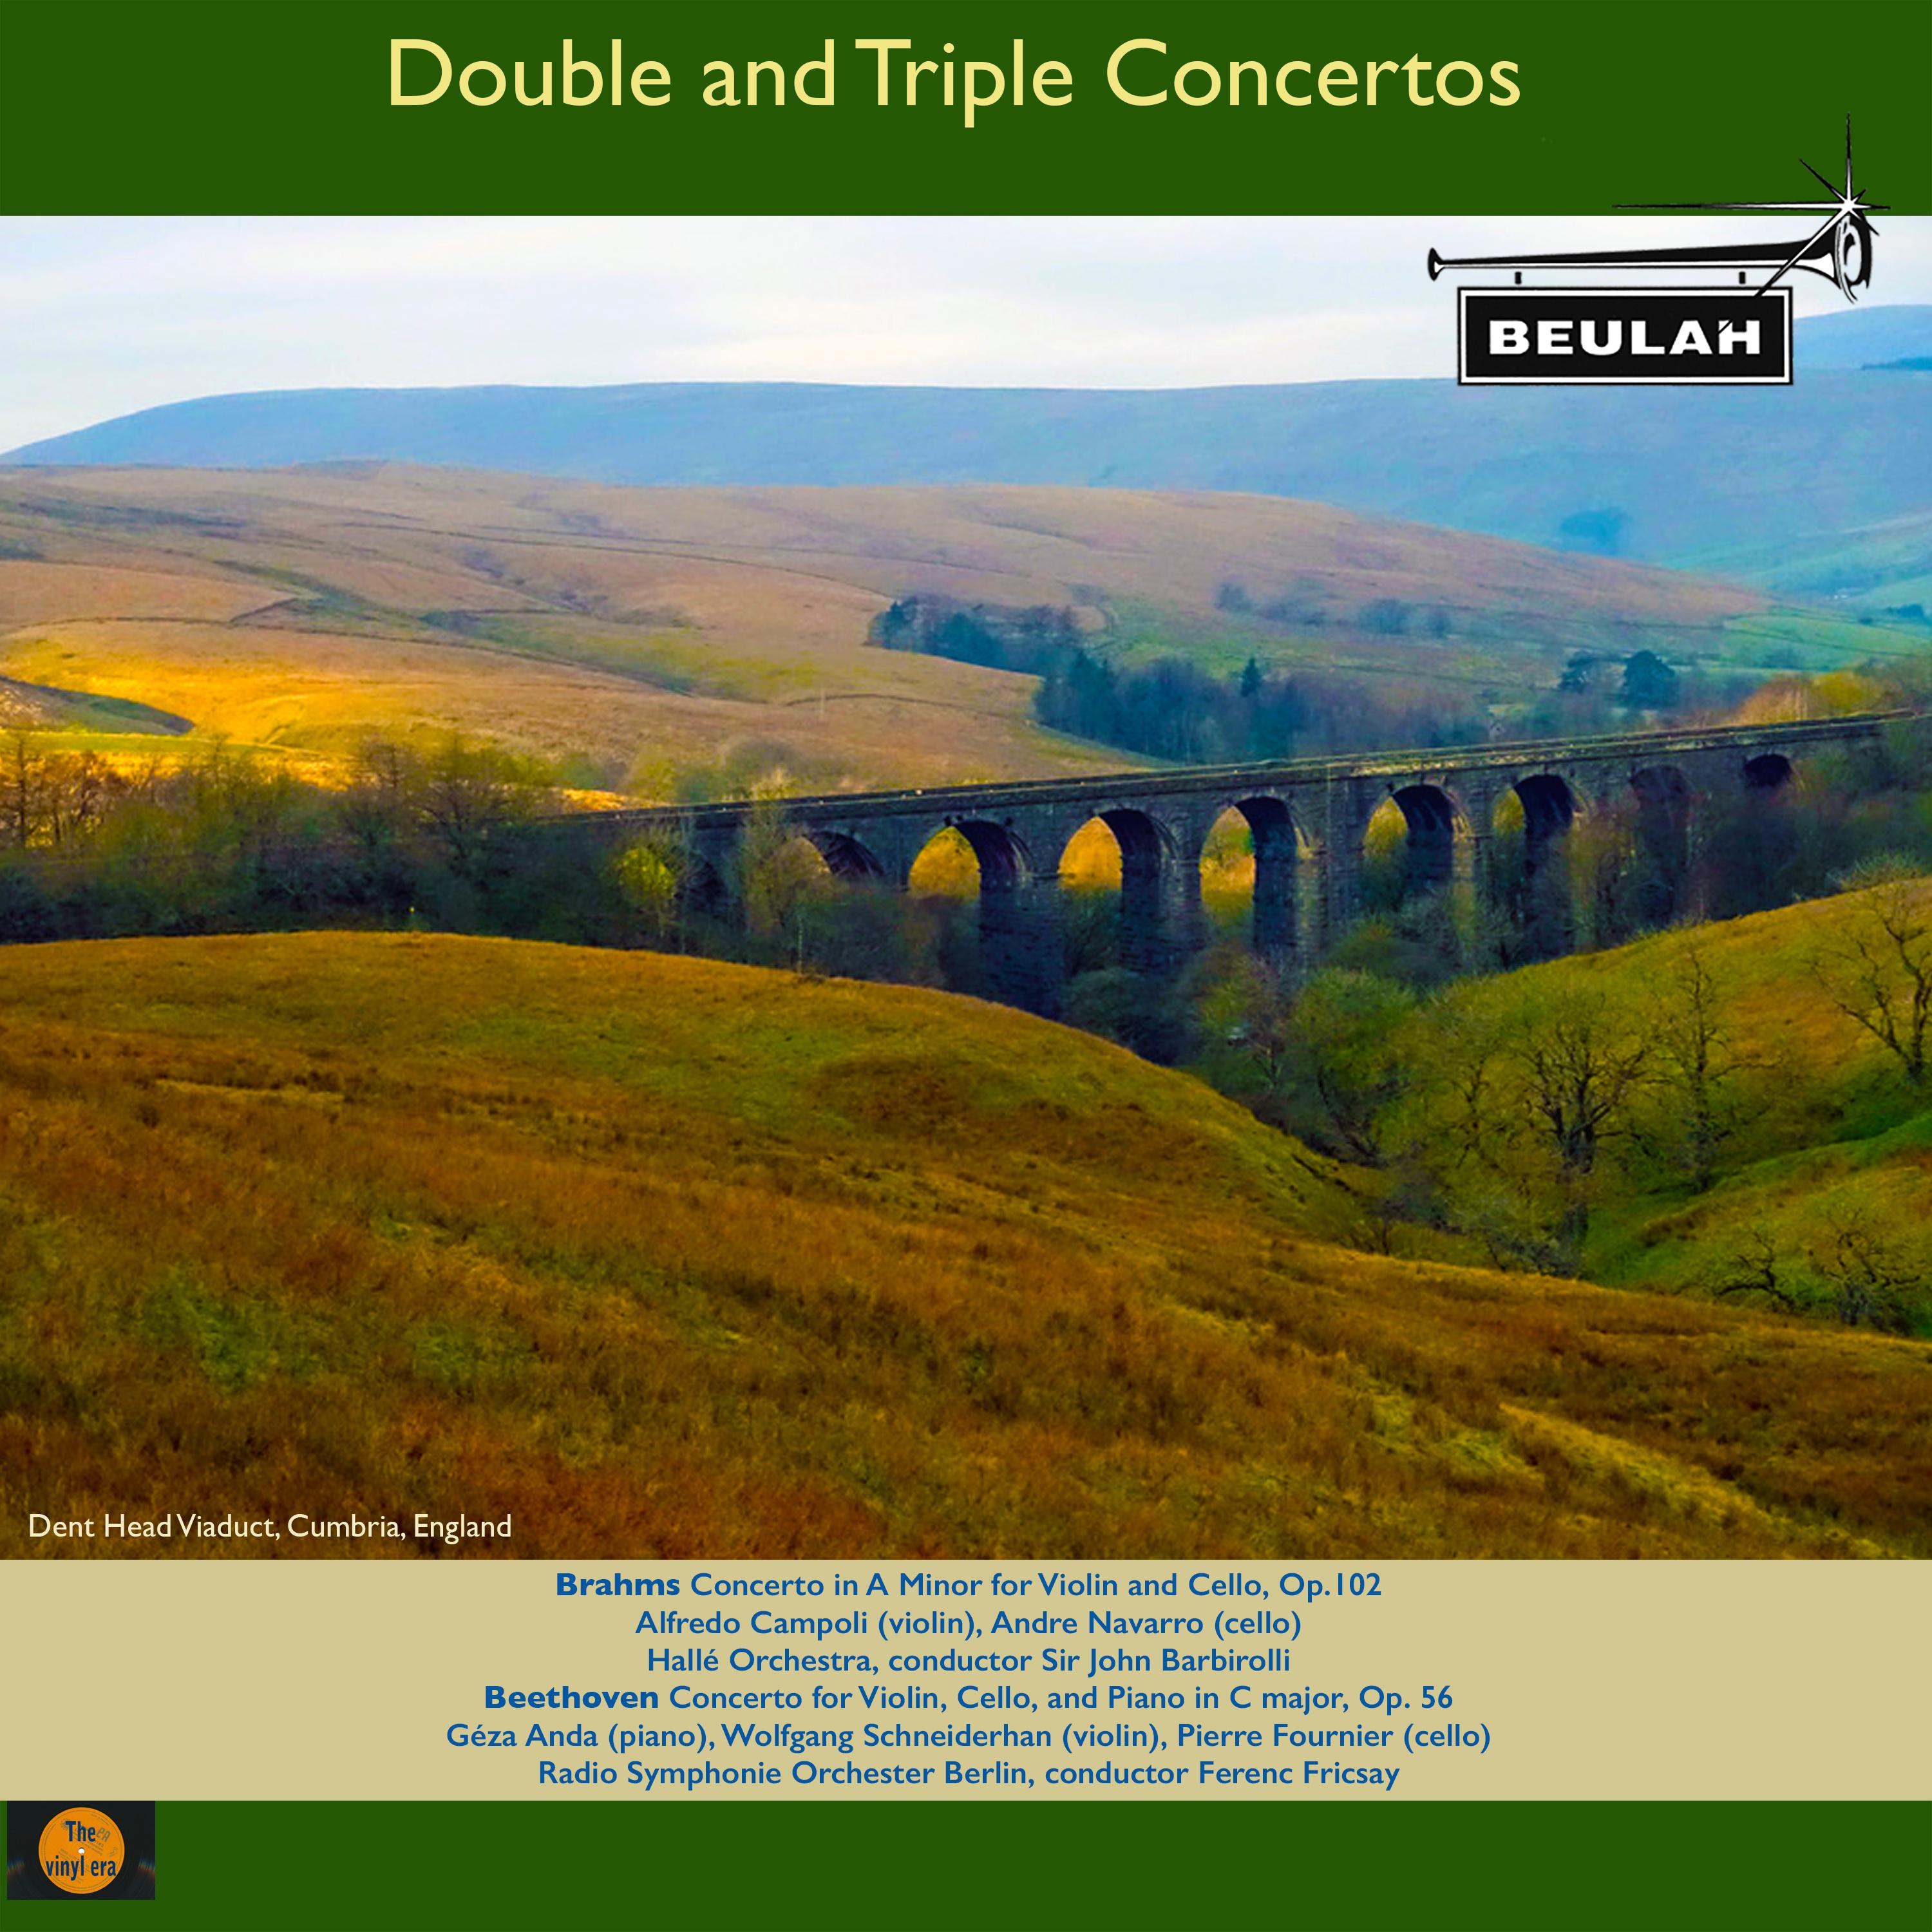 Concerto for Violin and Cello in A Minor, Op. 102: 1. Allegro